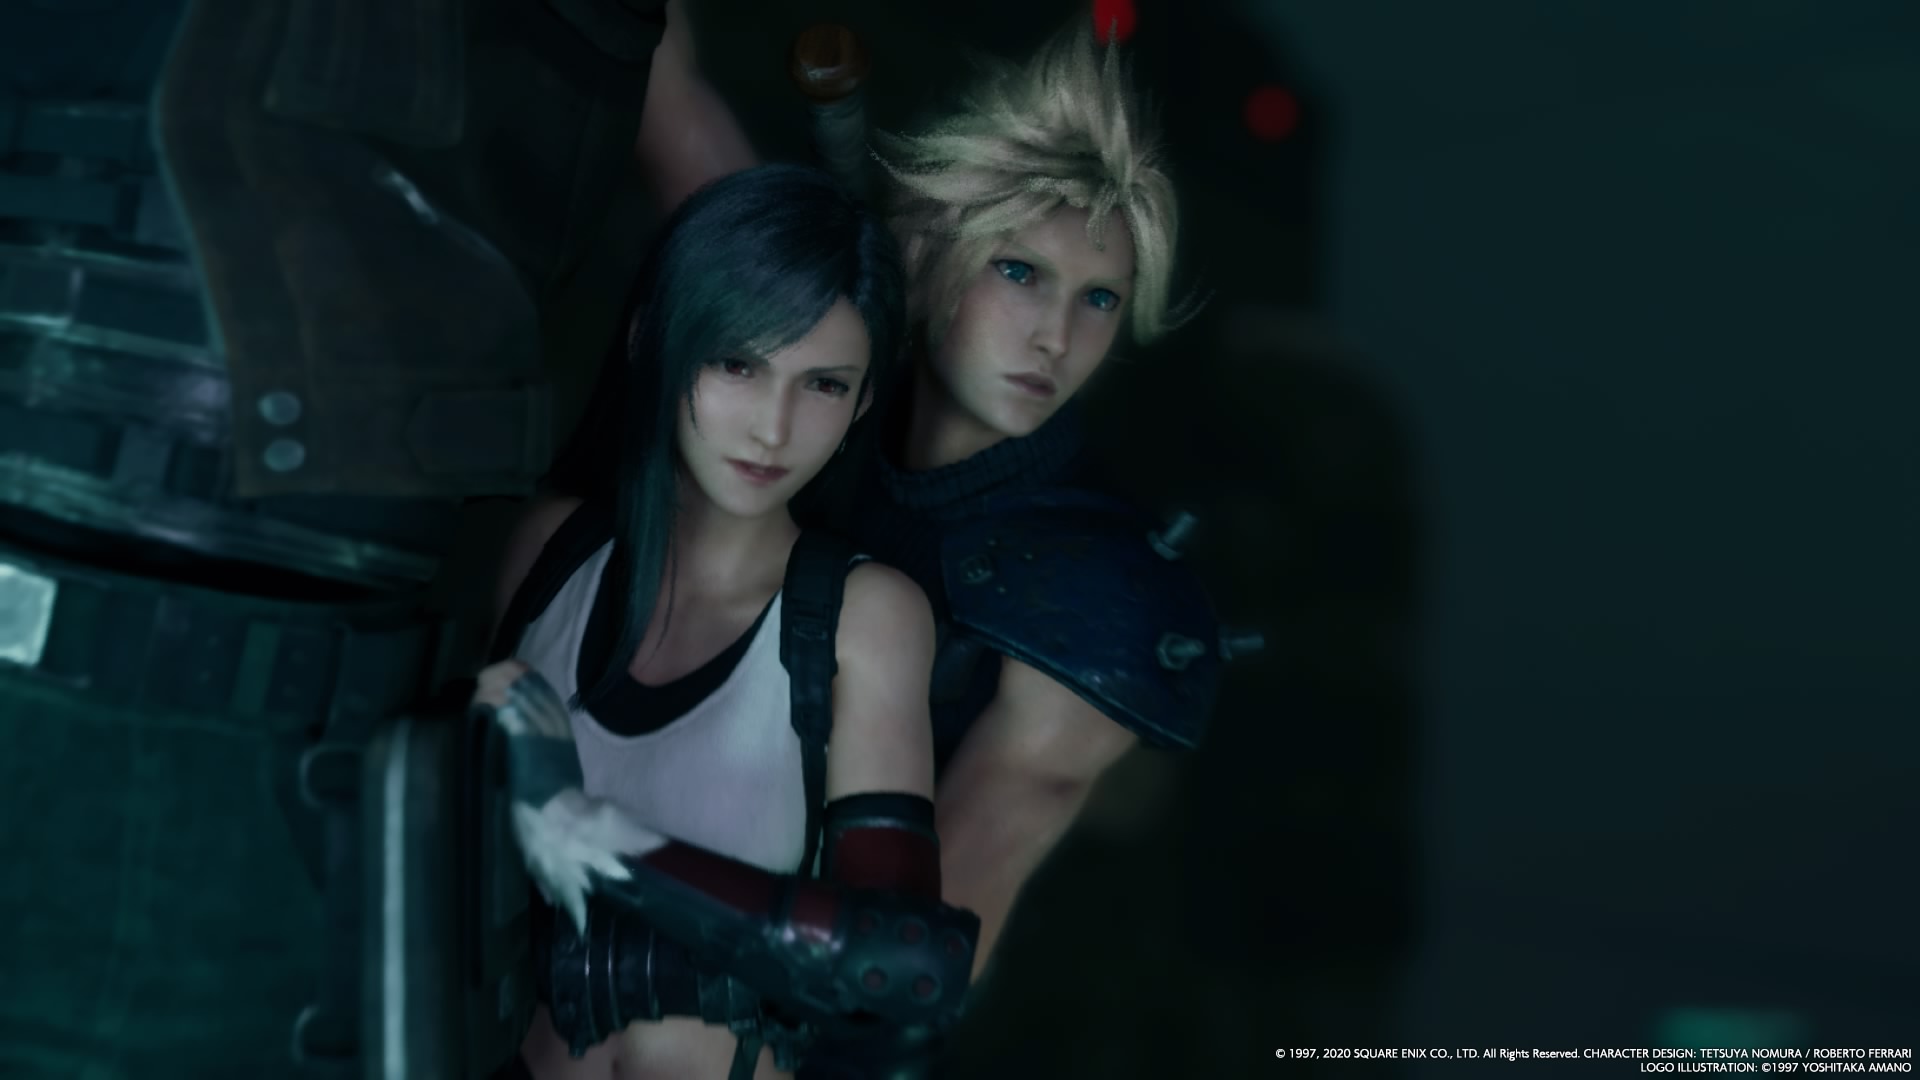 Final Fantasy VII Remake Part 2 Revealed for PS5